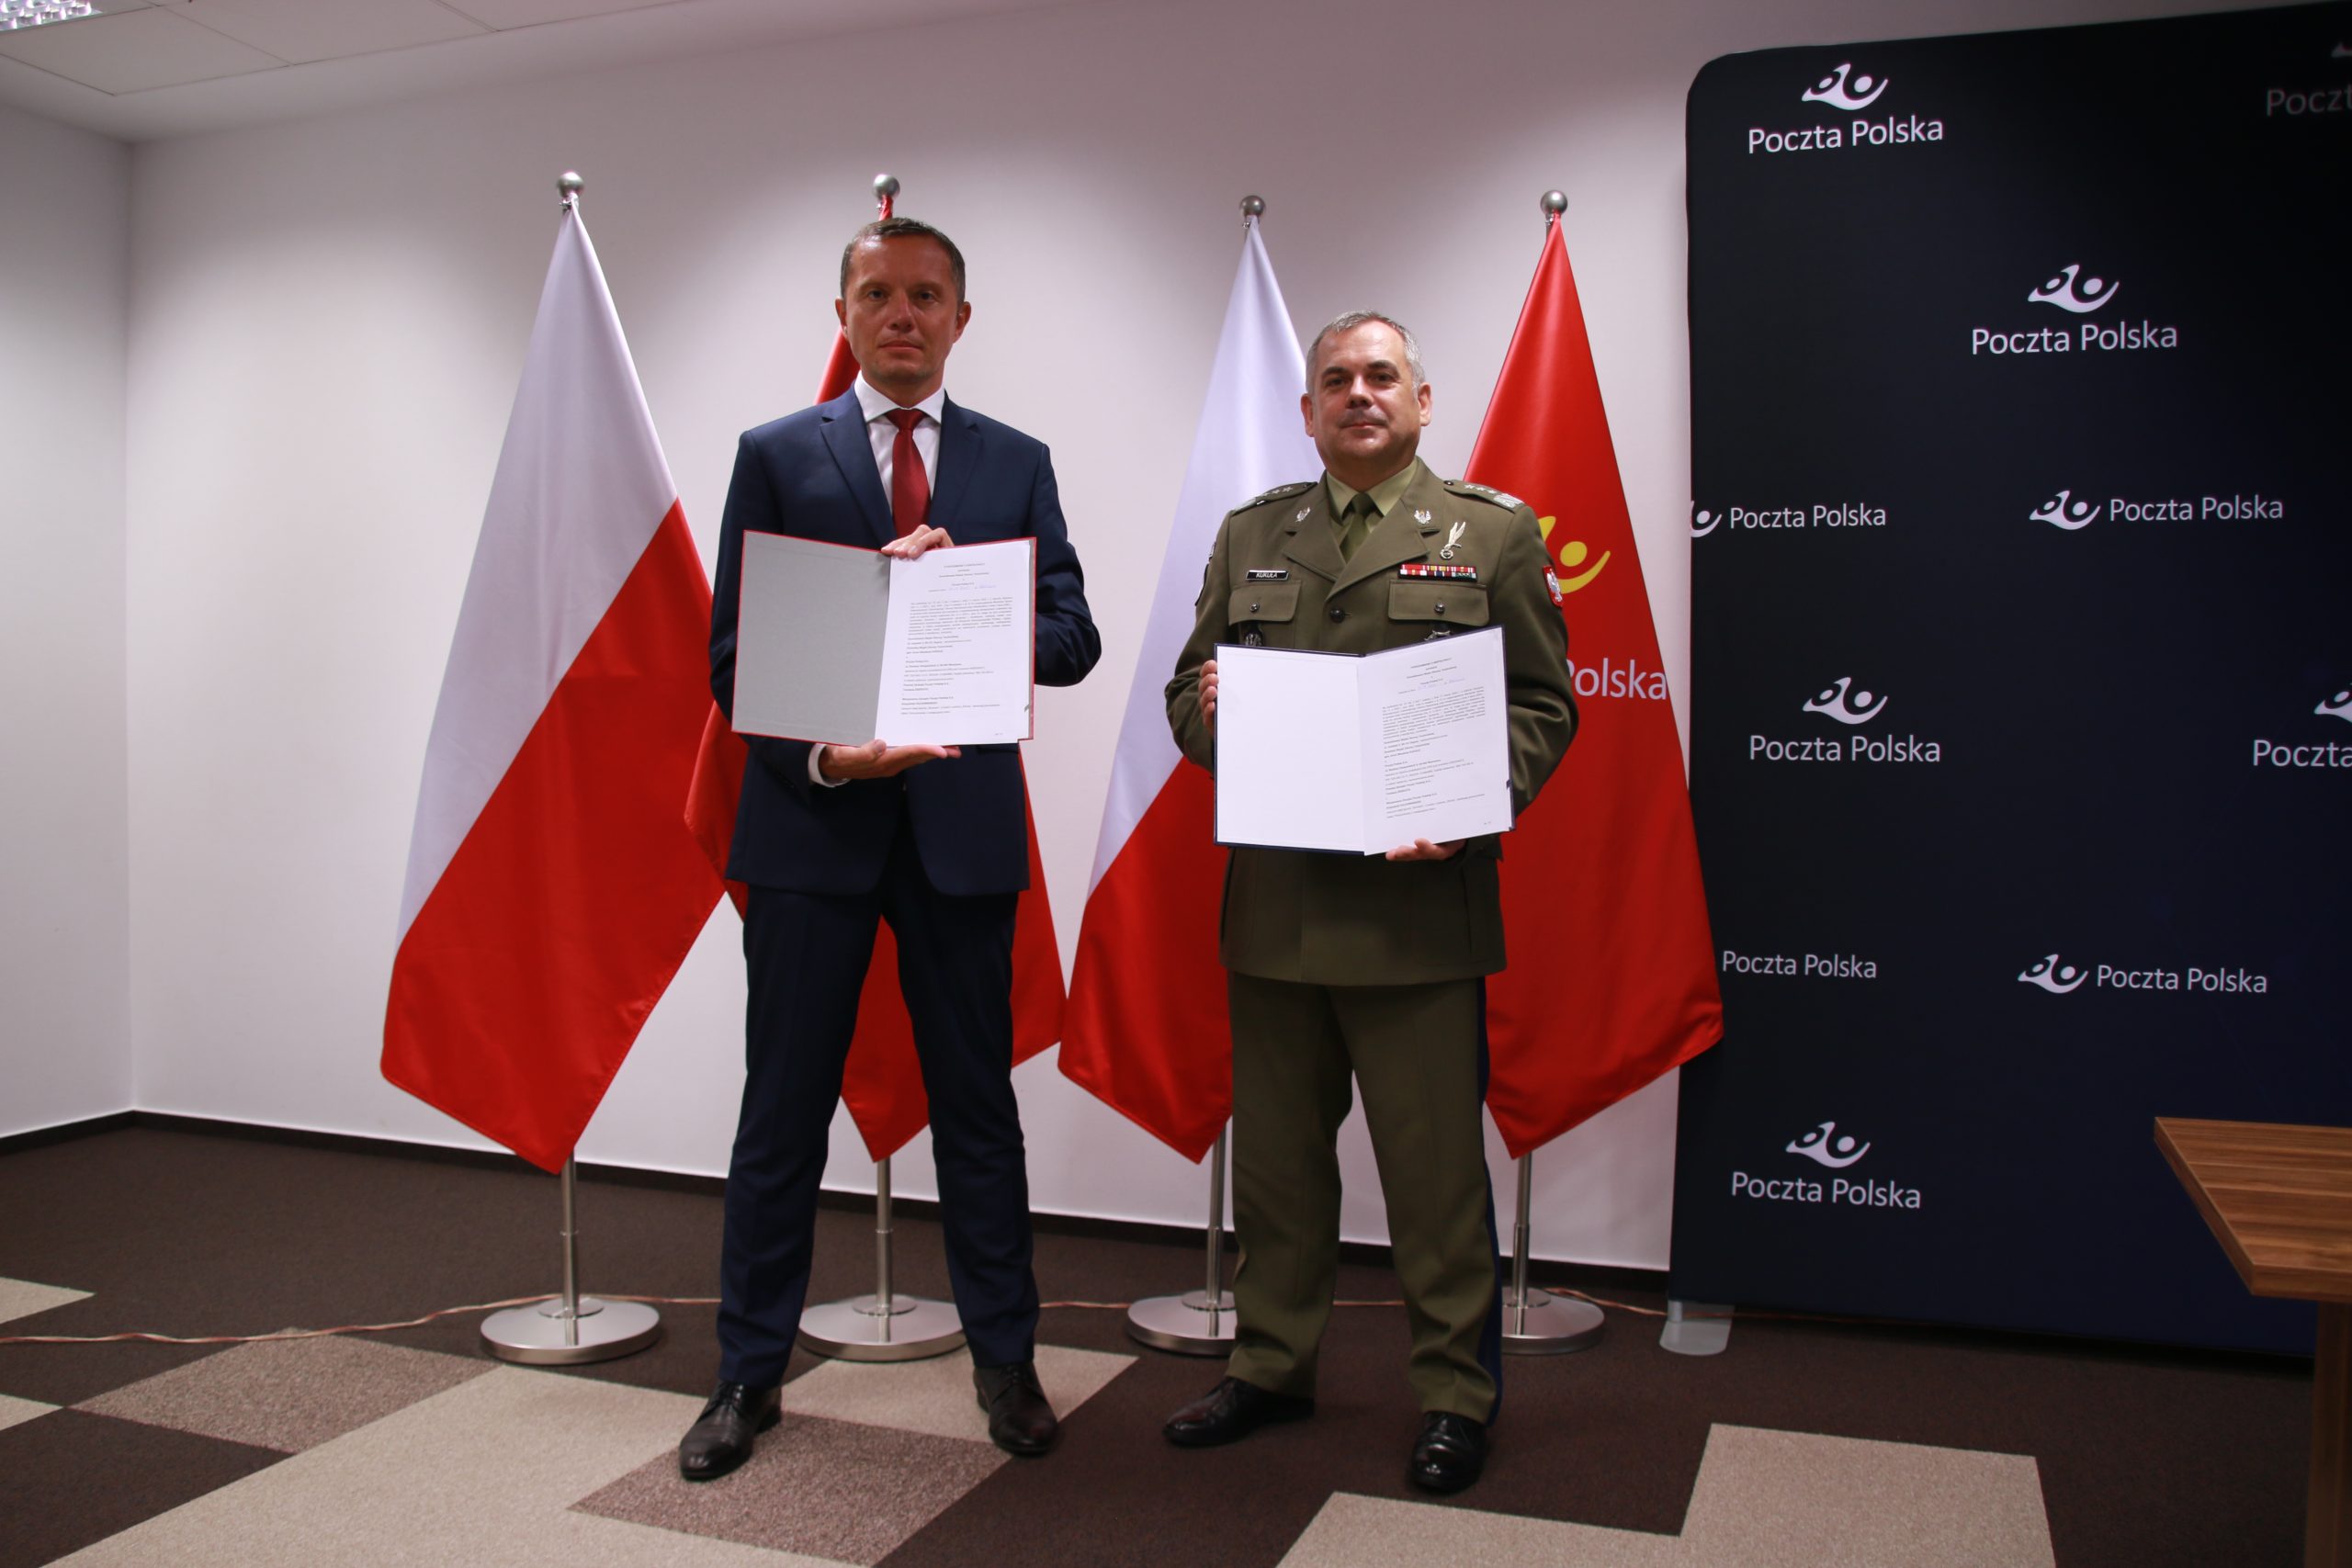  Poczta Polska podpisała porozumienie z WOT, którego celem jest wzmocnienie zdolności obronnych państwa 